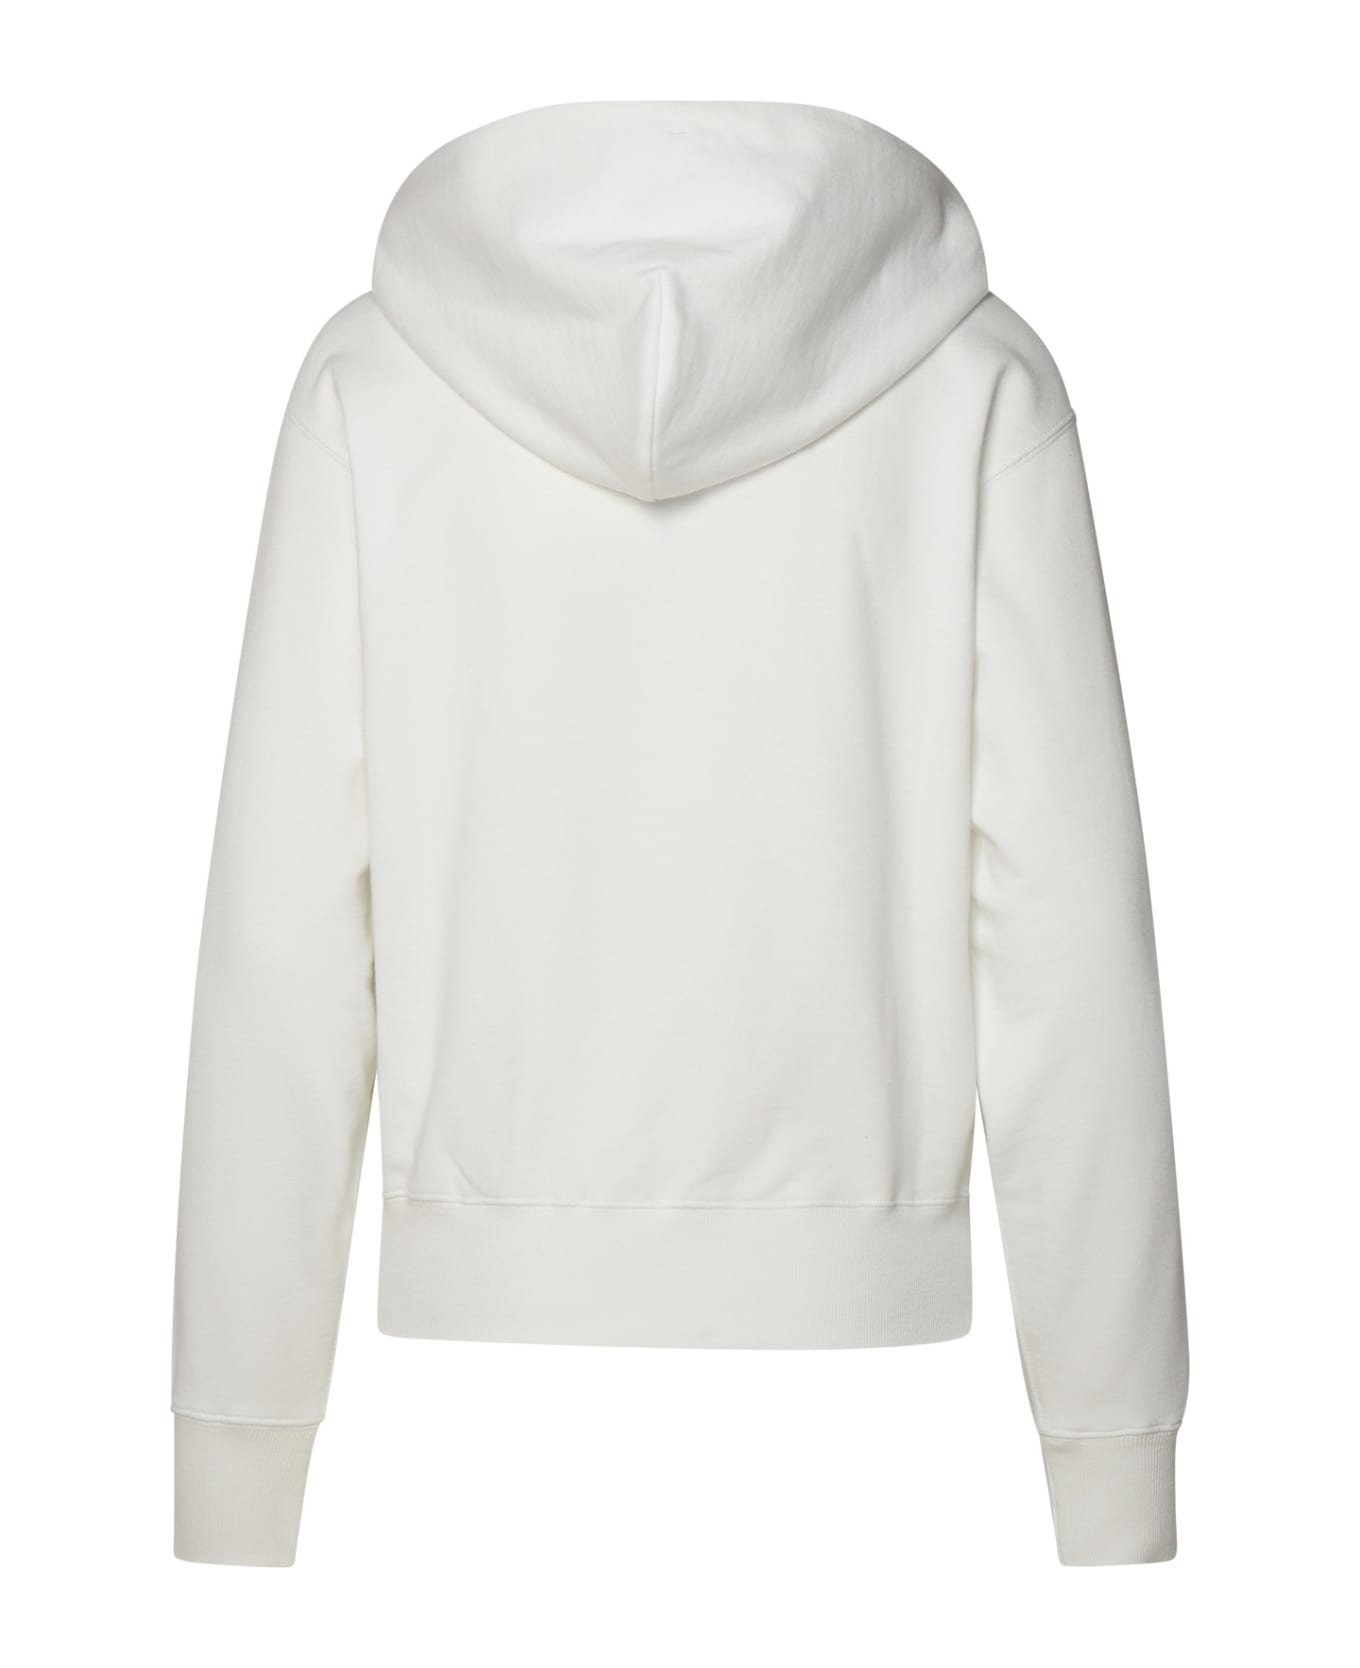 Kenzo Cotton Sweatshirt - White